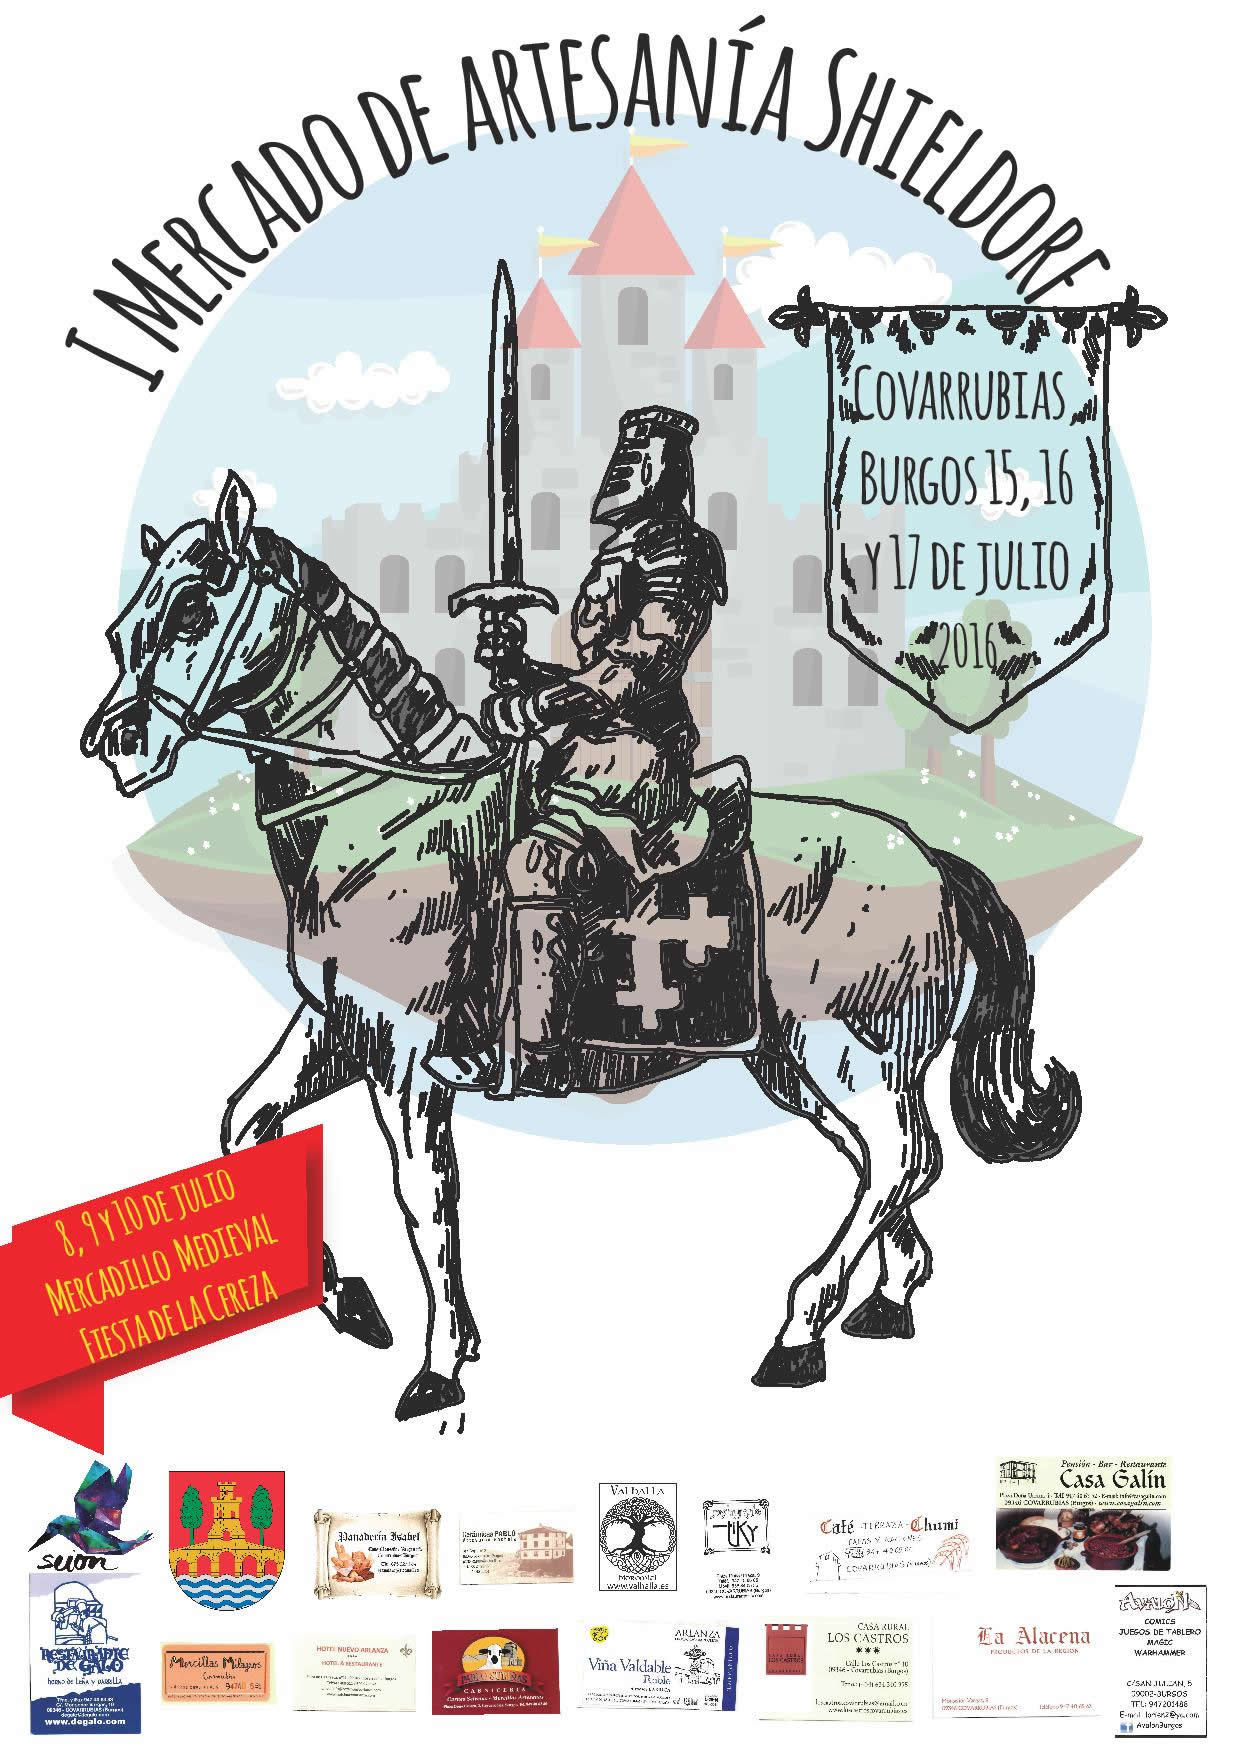 Mercado medieval en Covarrubias, Burgos 15 al 17 de Julio del 2016